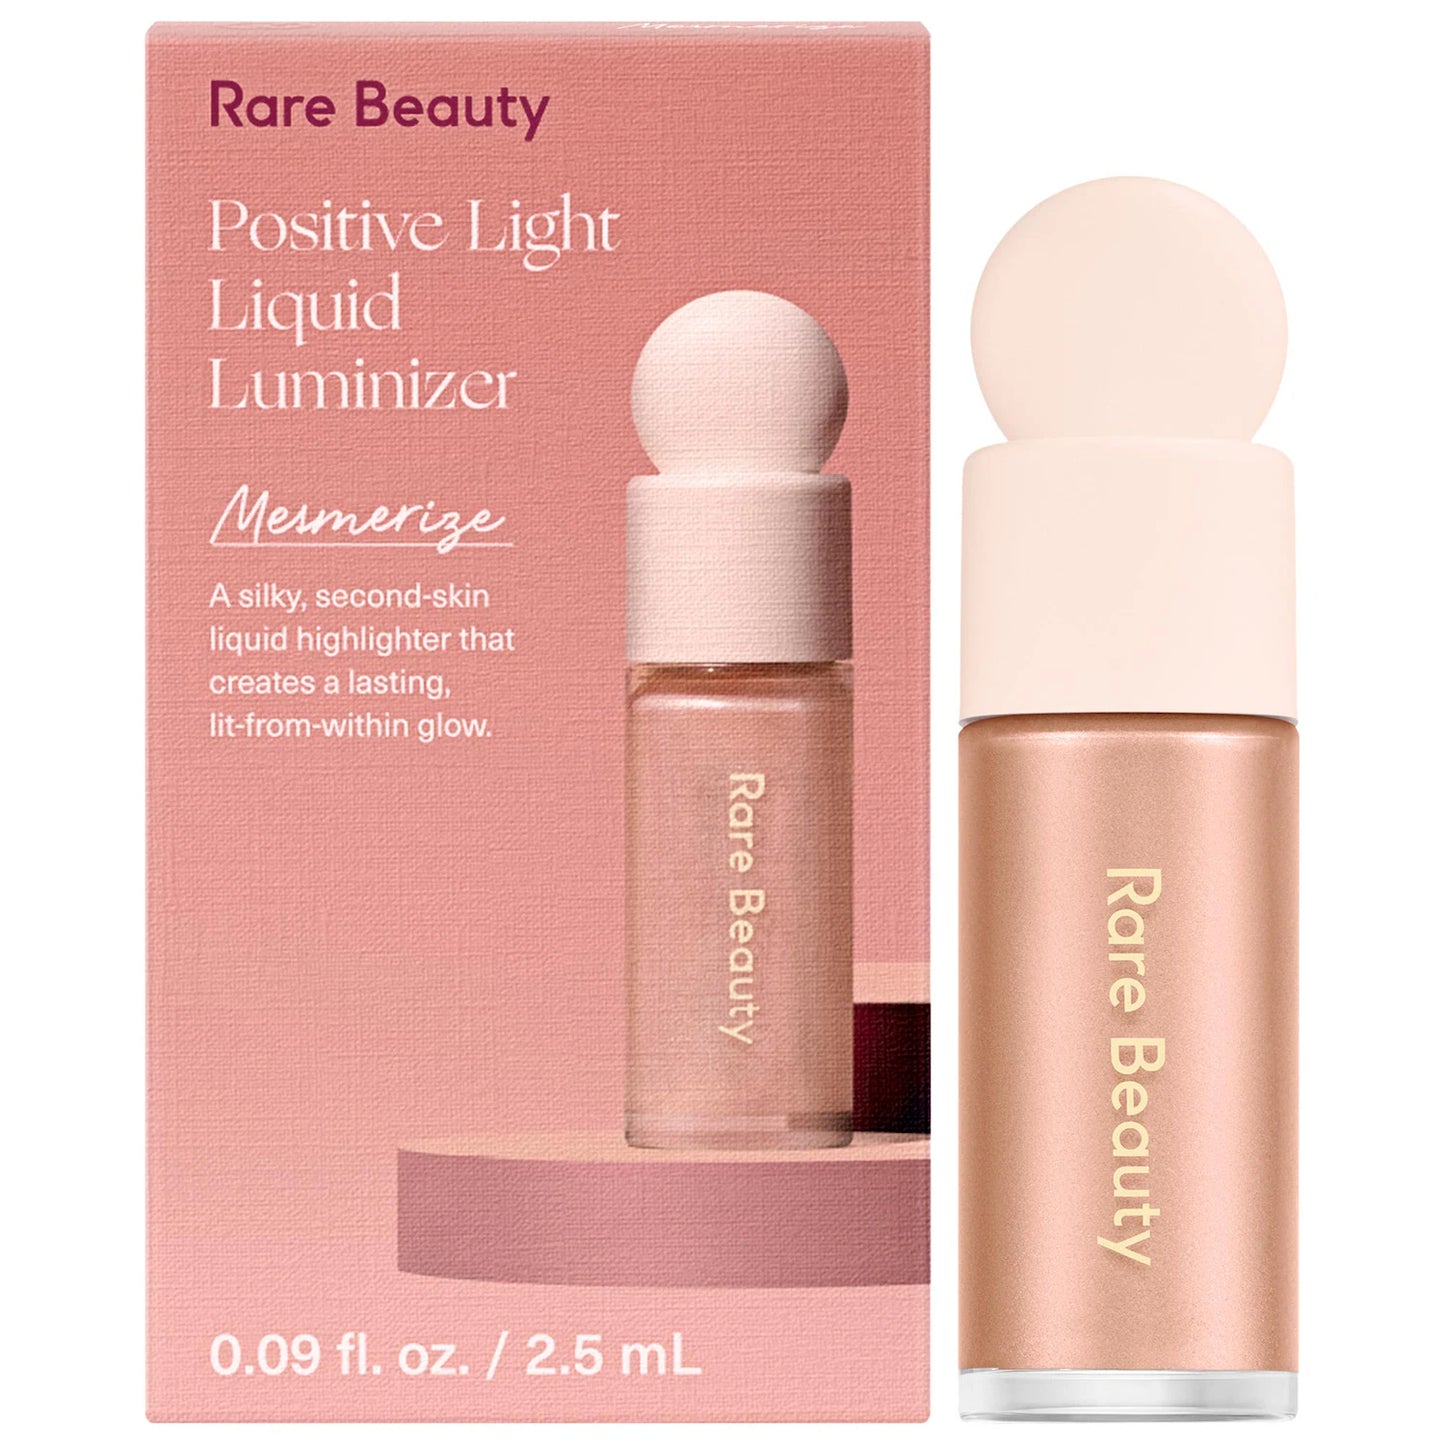 Mini Positive Light Liquid Luminizer Rare Beauty *pre-order*